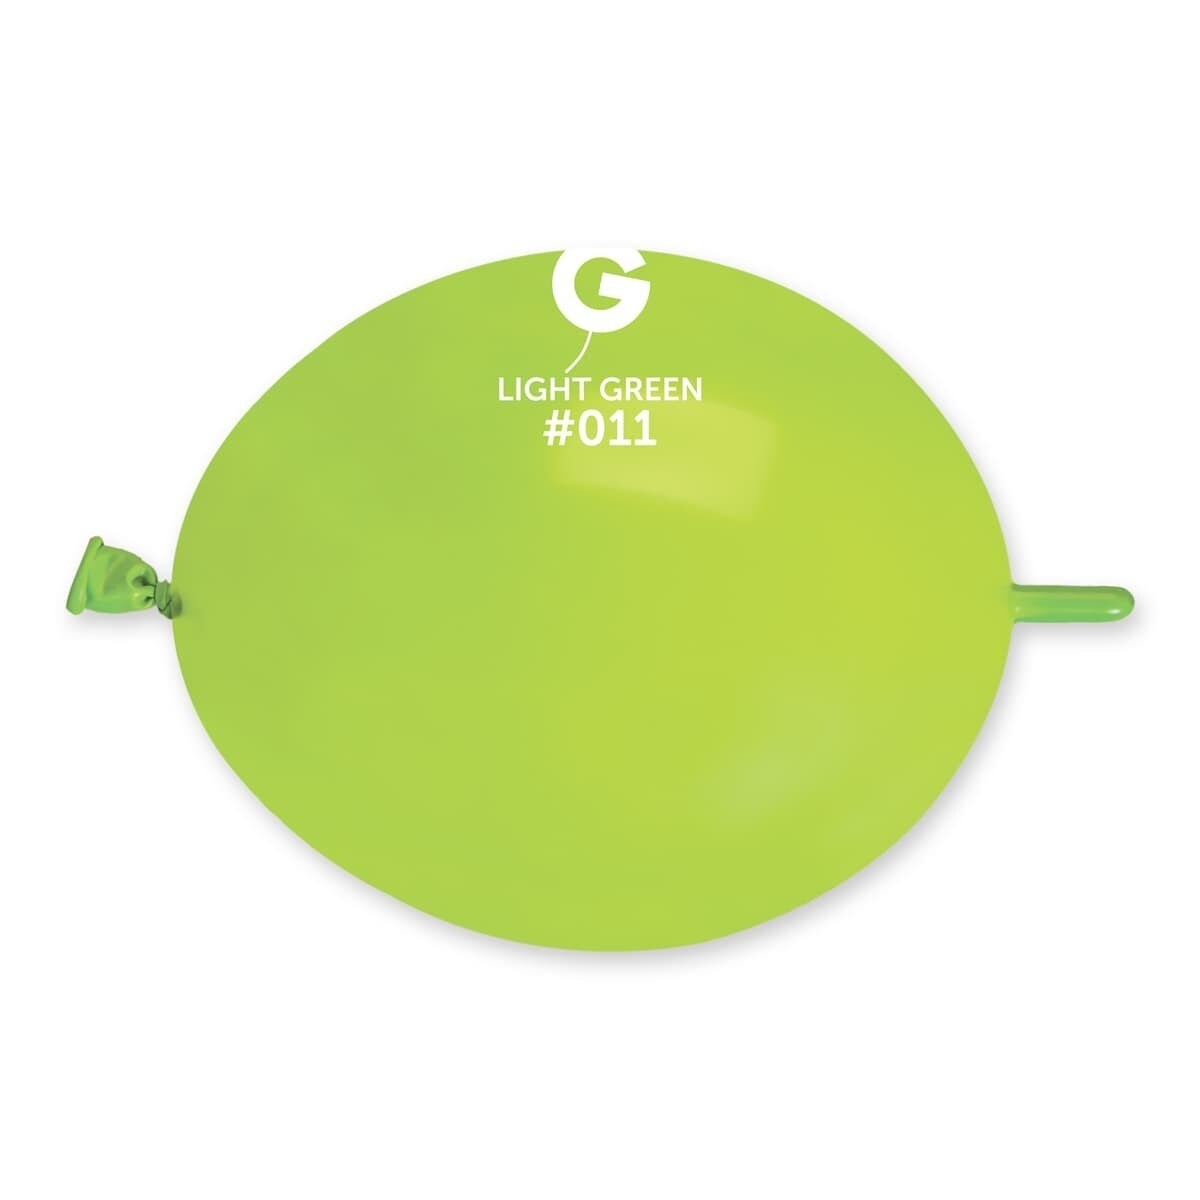 GL6: #011 Light Green 061116 - 6 in